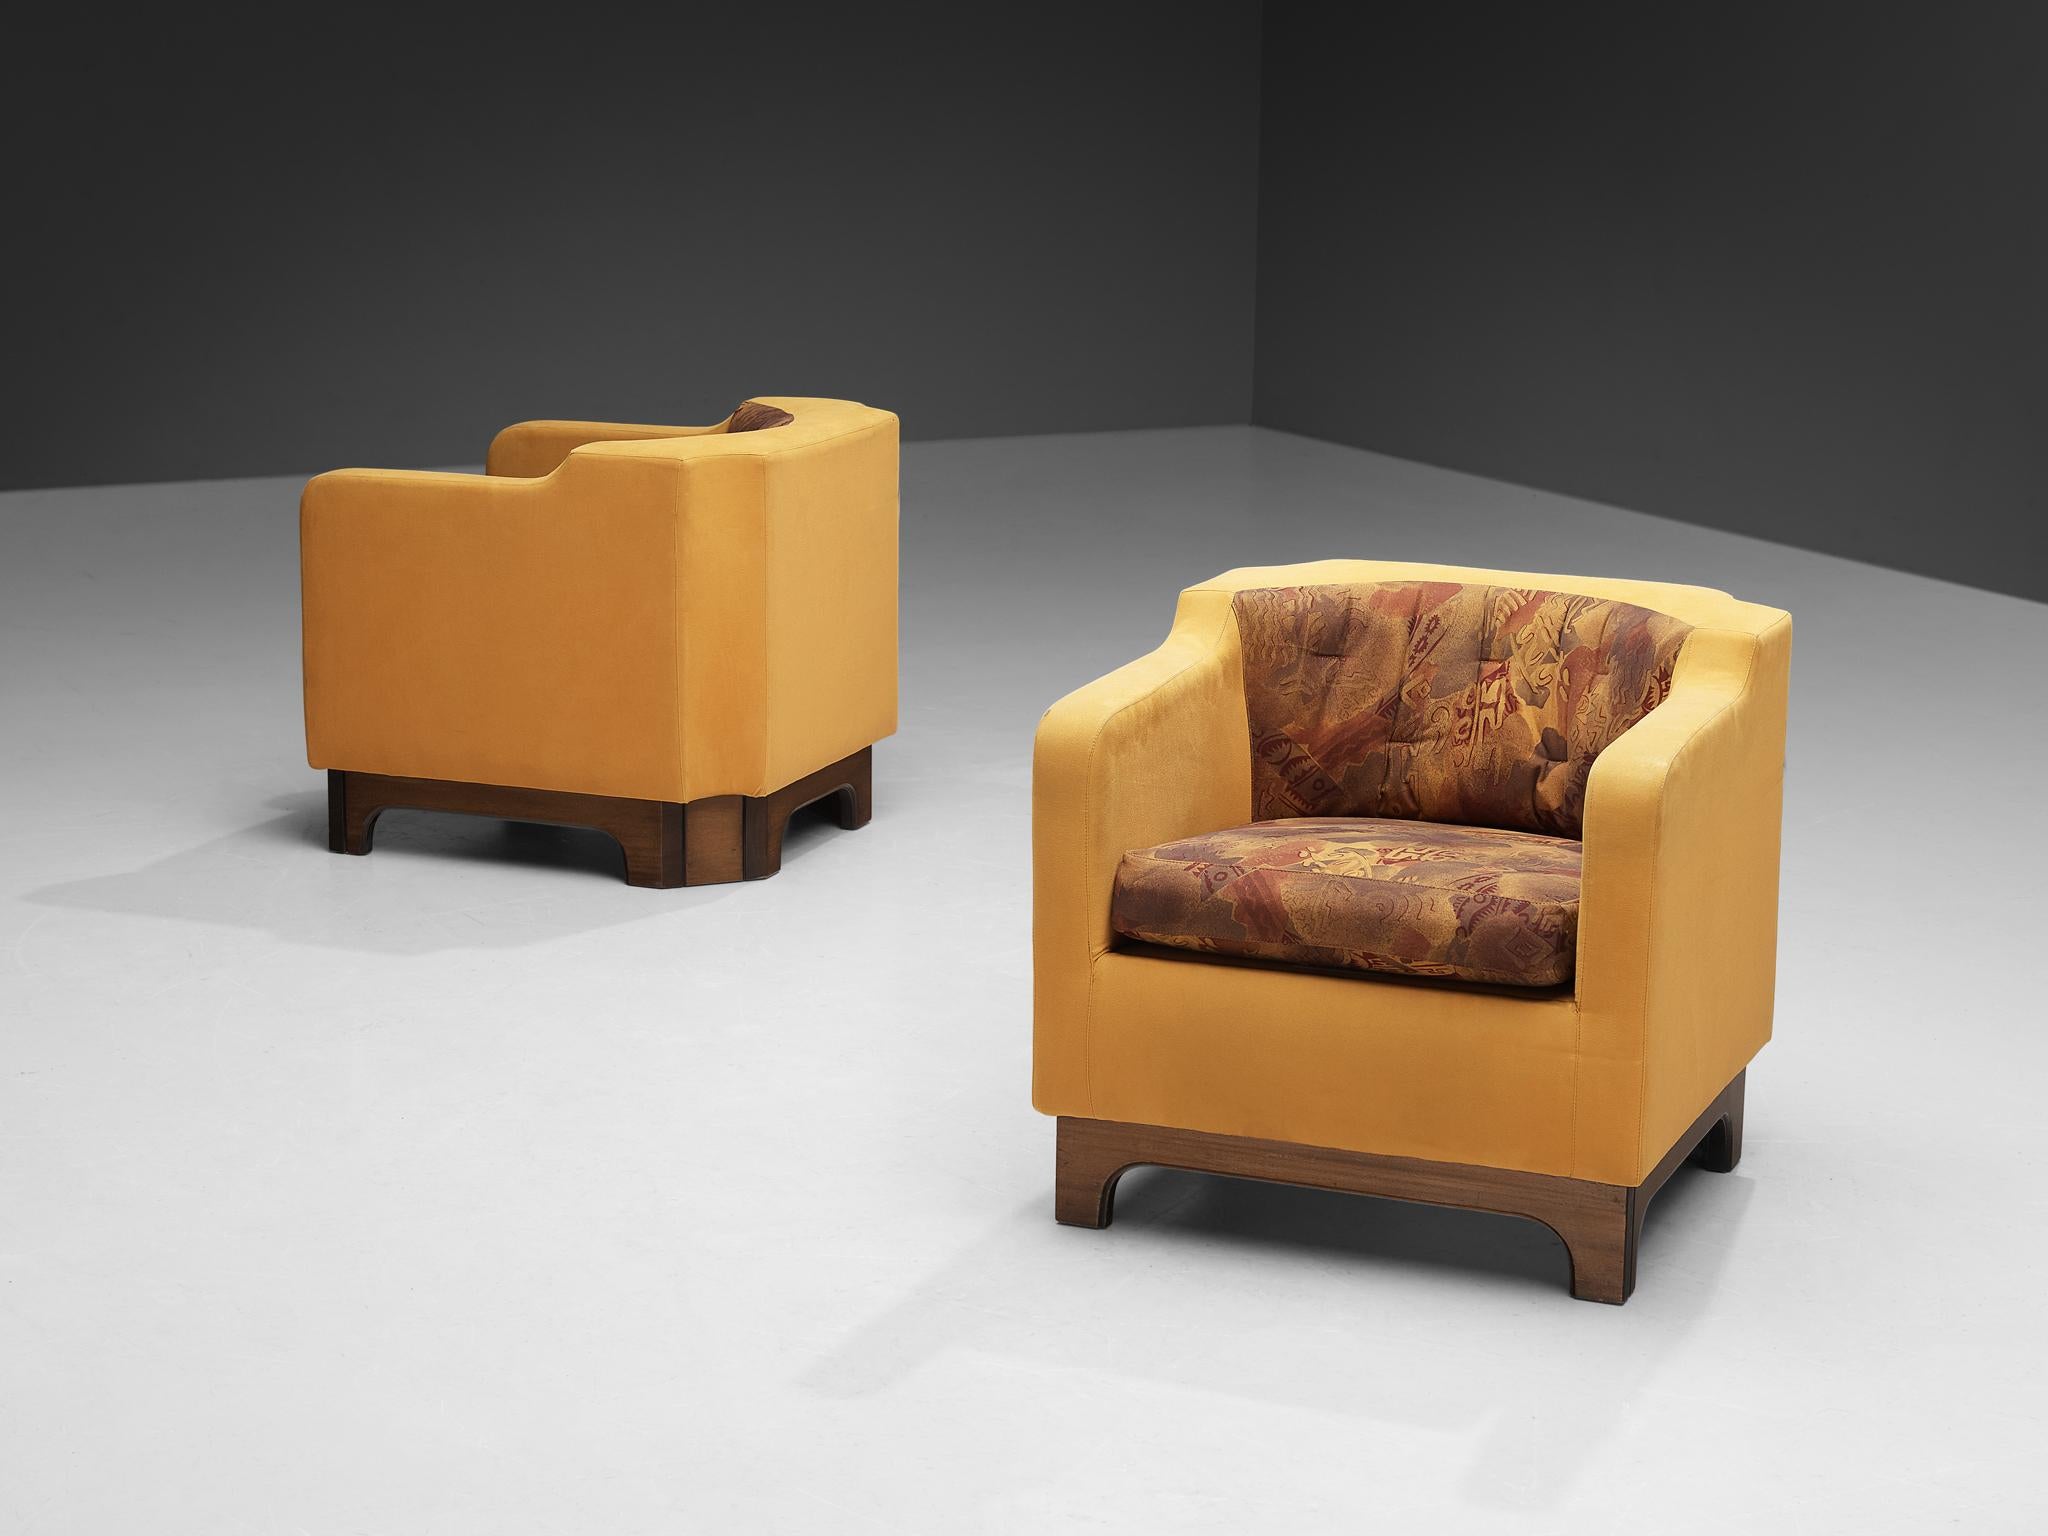 Sessel, Samt, Stoff, Walnussfurnier, Italien, 1970er Jahre. 

Die Konstruktion dieser wunderbaren Sessel weist starke Ähnlichkeit mit den Clubsesseln des italienischen Herstellers Saporiti auf. Der äußere Rahmen ist mit kamelfarbenem Samt